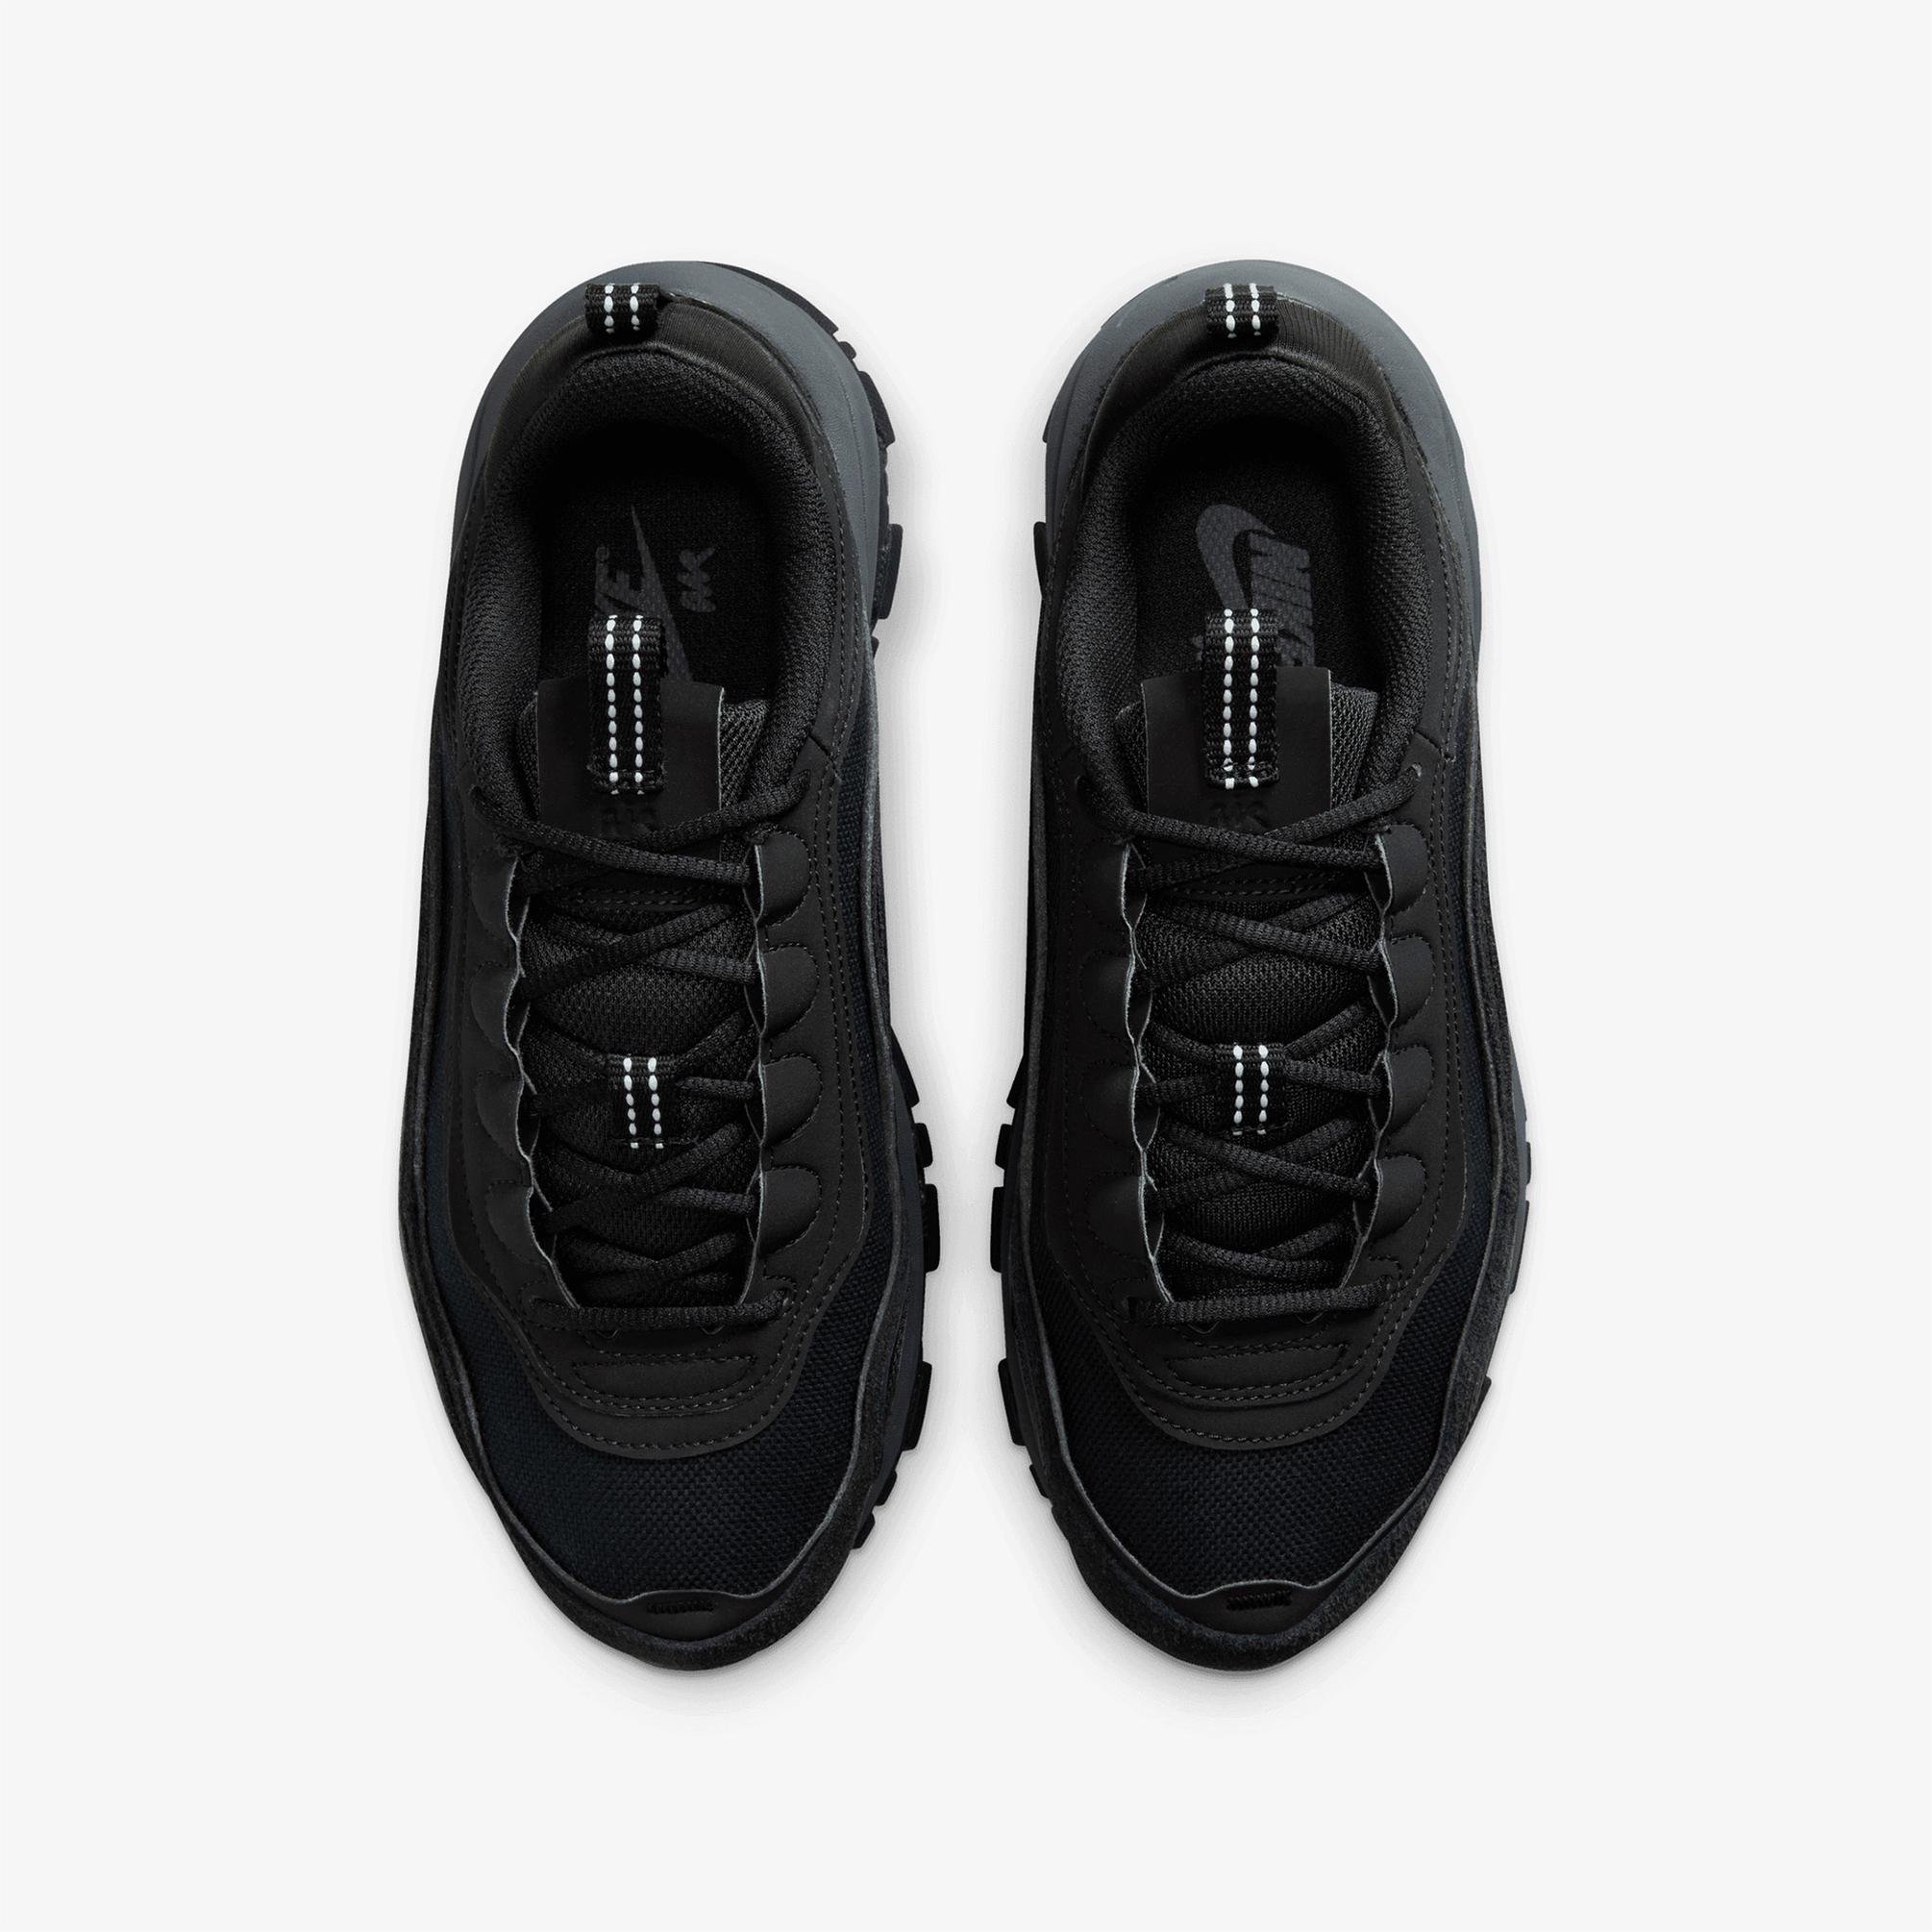  Nike Air Max 97 Futura Kadın Siyah Spor Ayakkabı